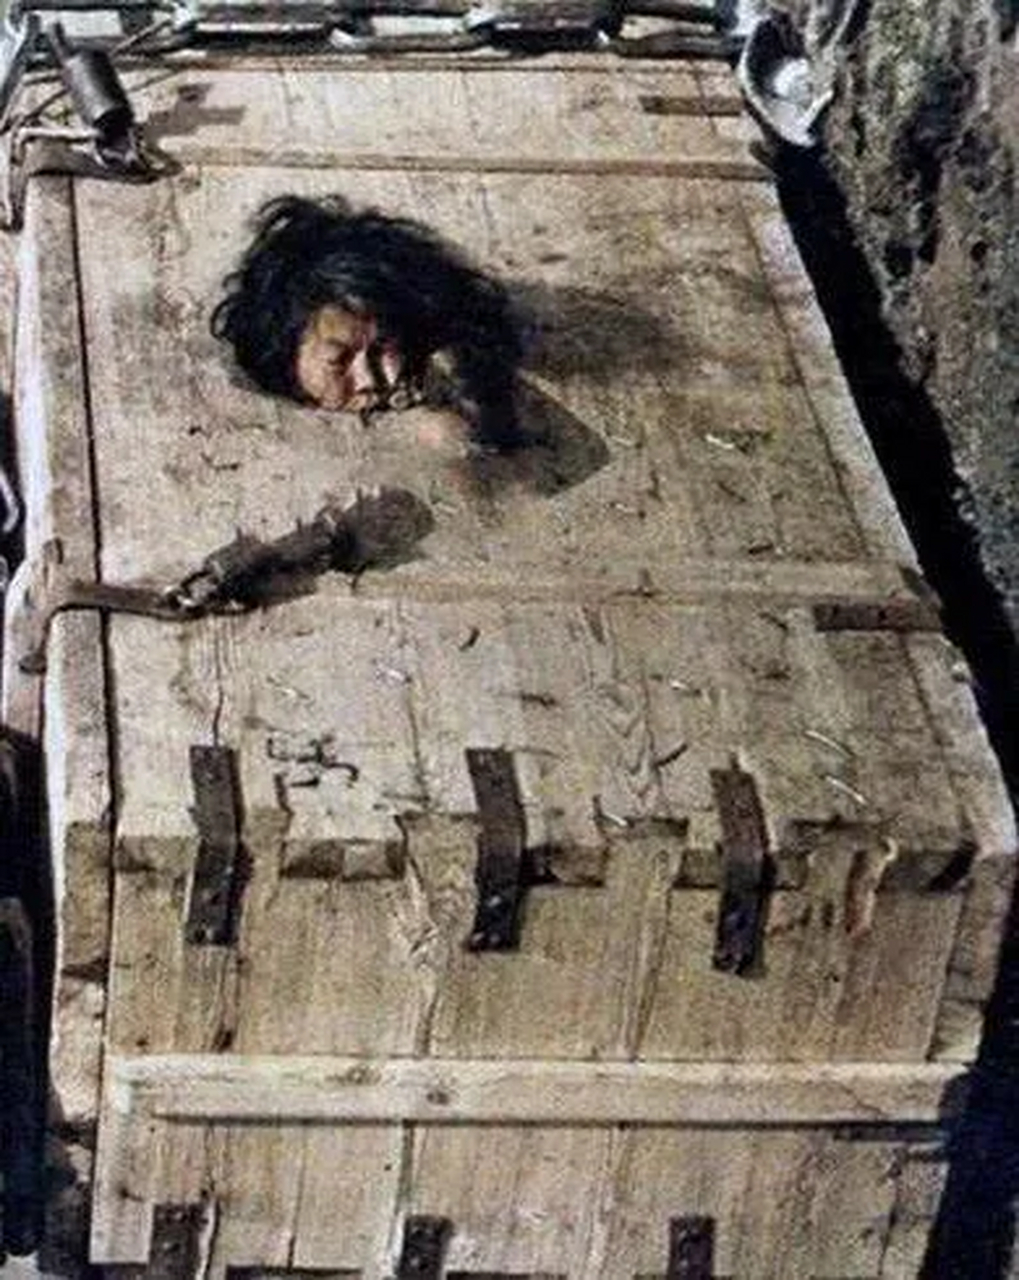 清朝时期,一个被判"饿刑"的女子被关进了木箱里